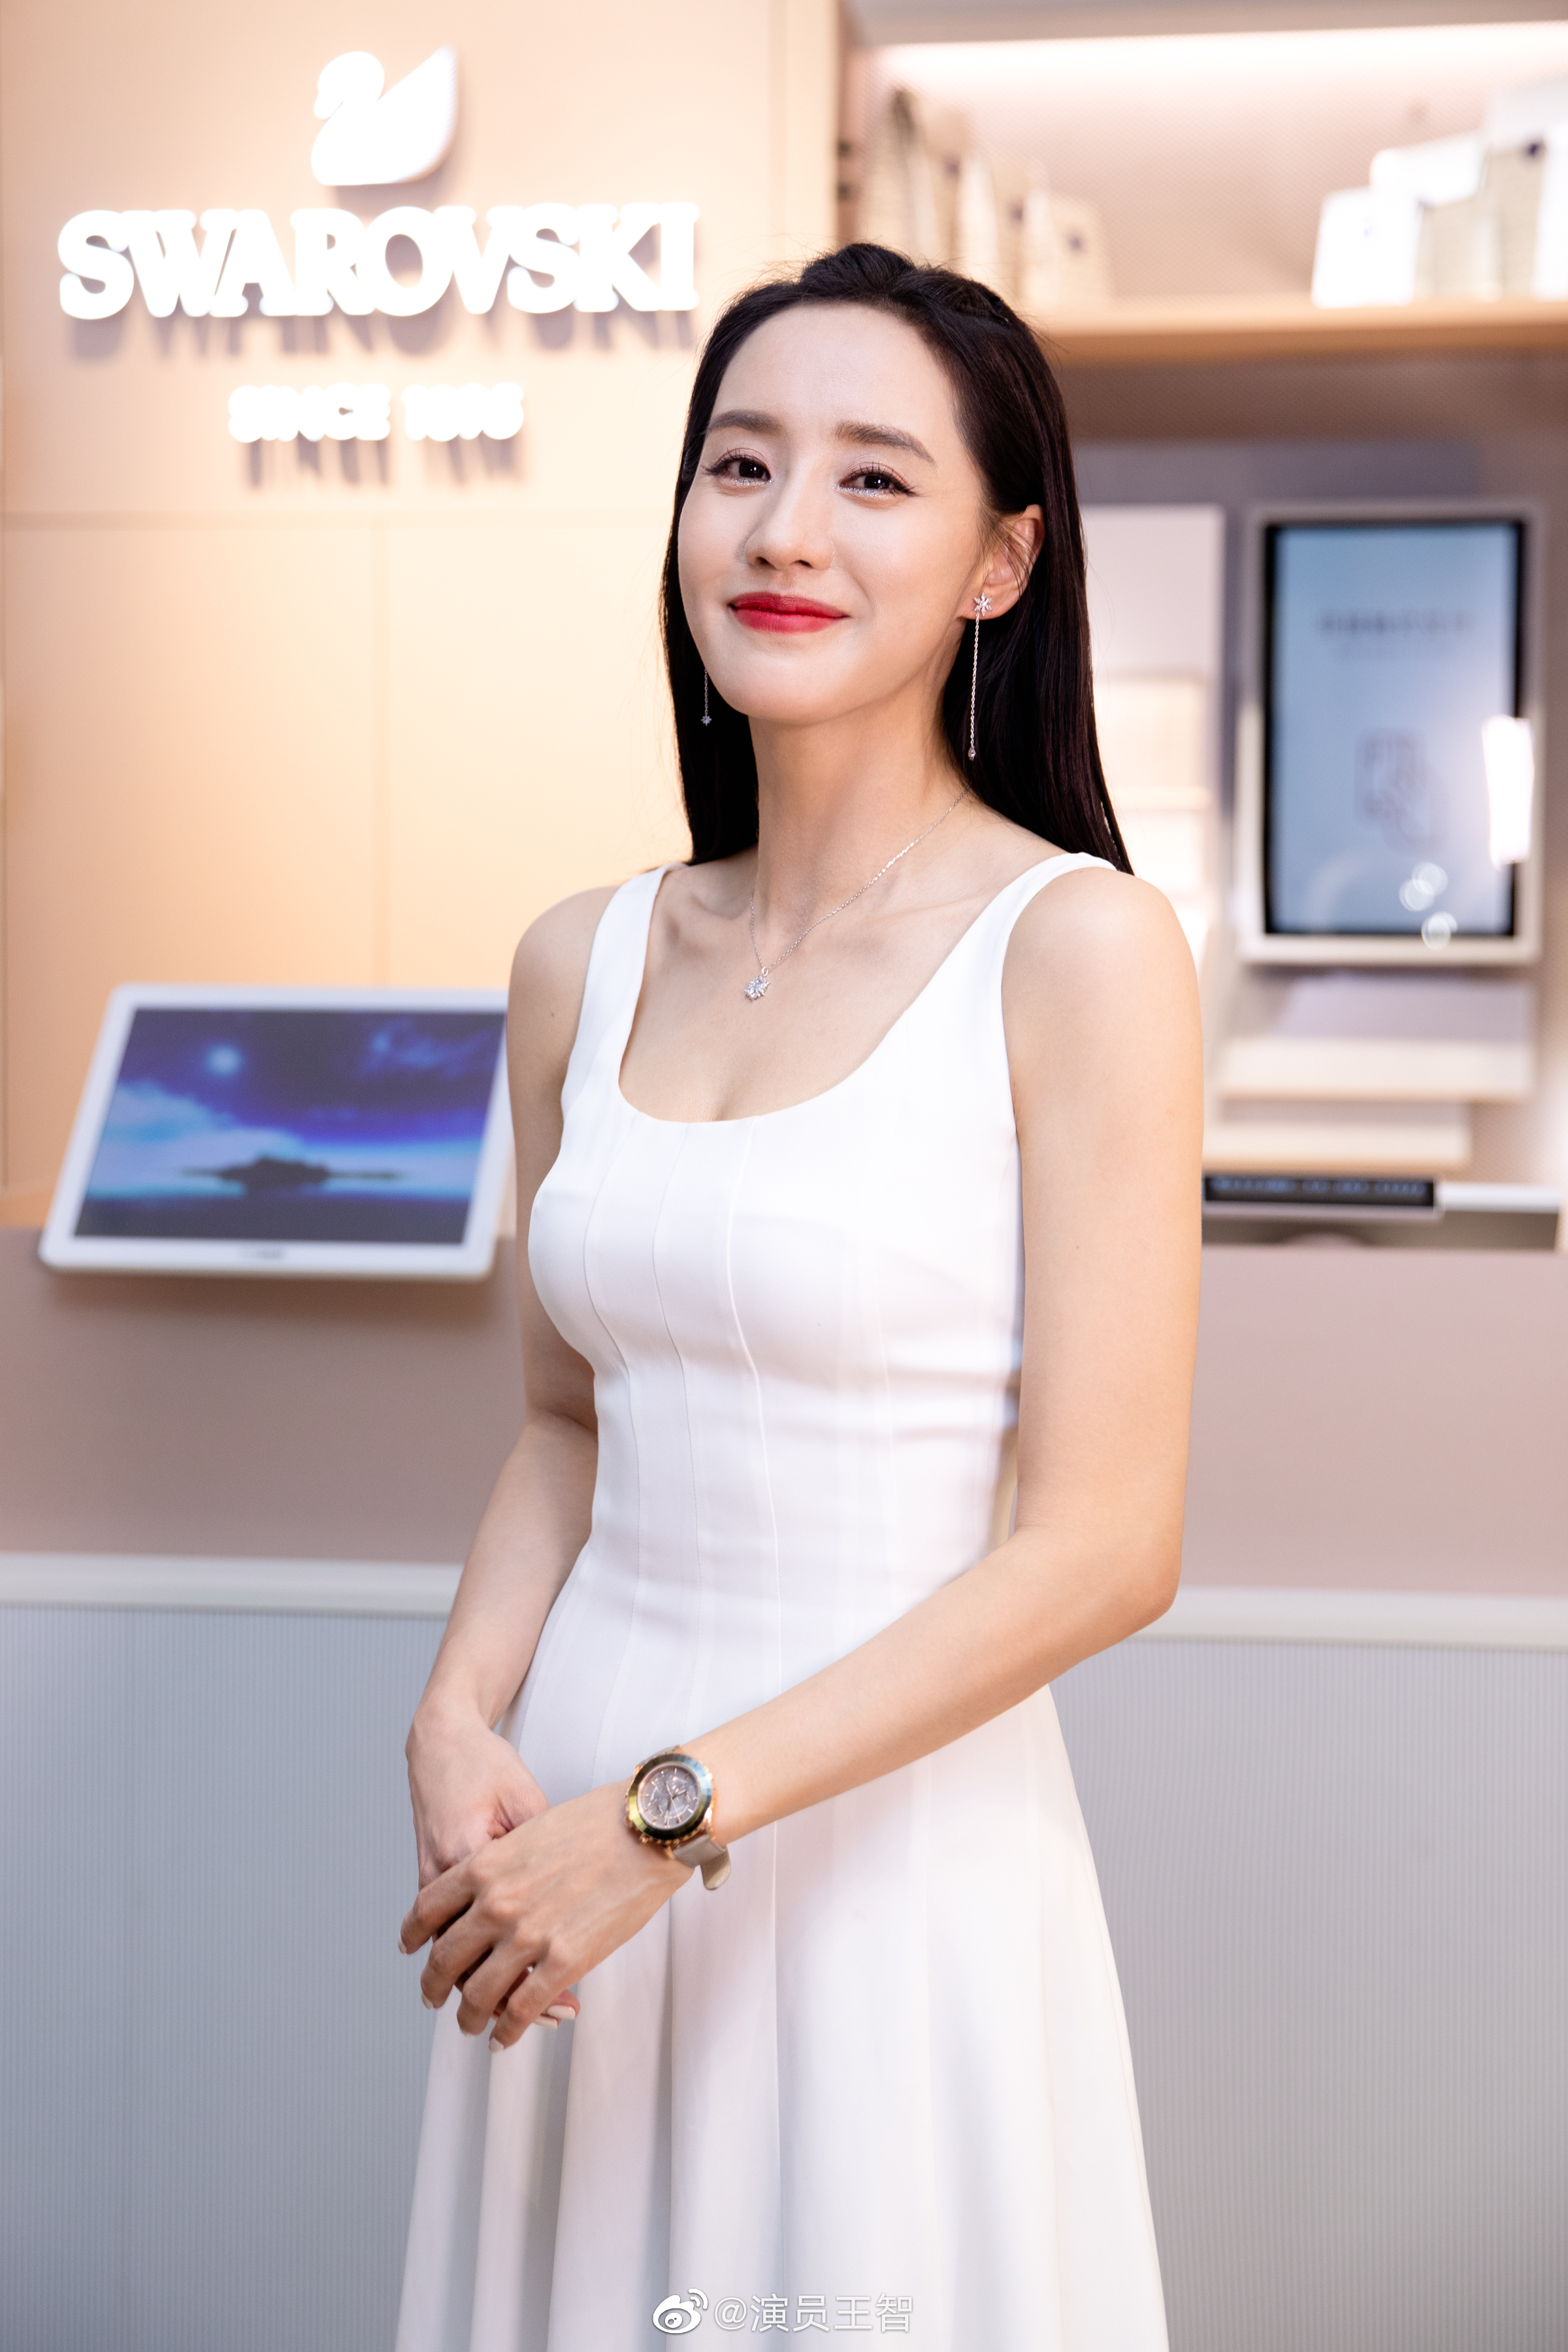 王智穿白色長裙秀性感身材 笑容甜美優雅迷人-圖2